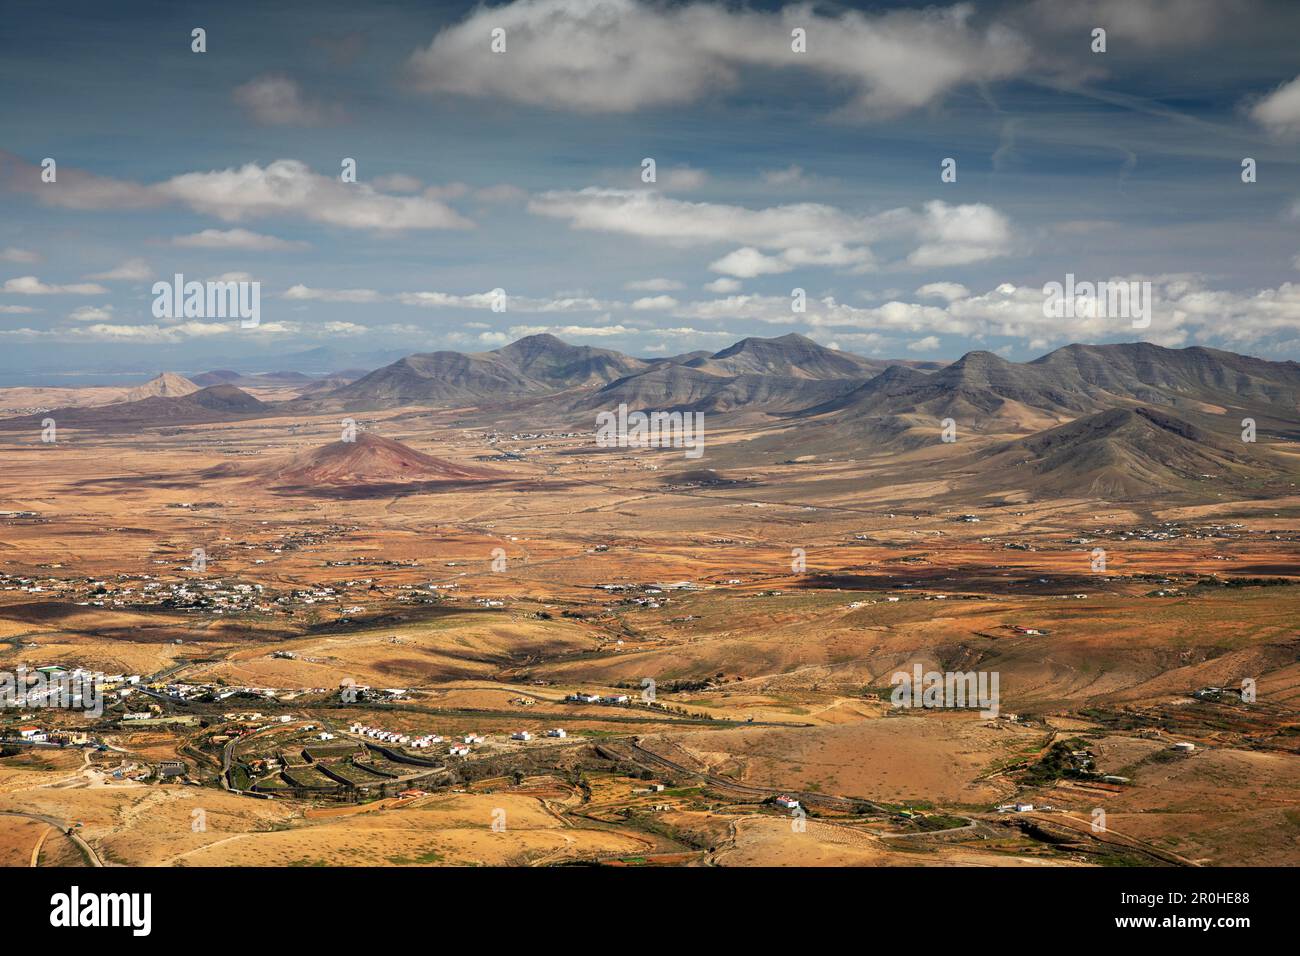 Plateau au nord de Valle de Santa Ines, vue de Mirador de Morro Velosa, îles Canaries, Fuerteventura Banque D'Images